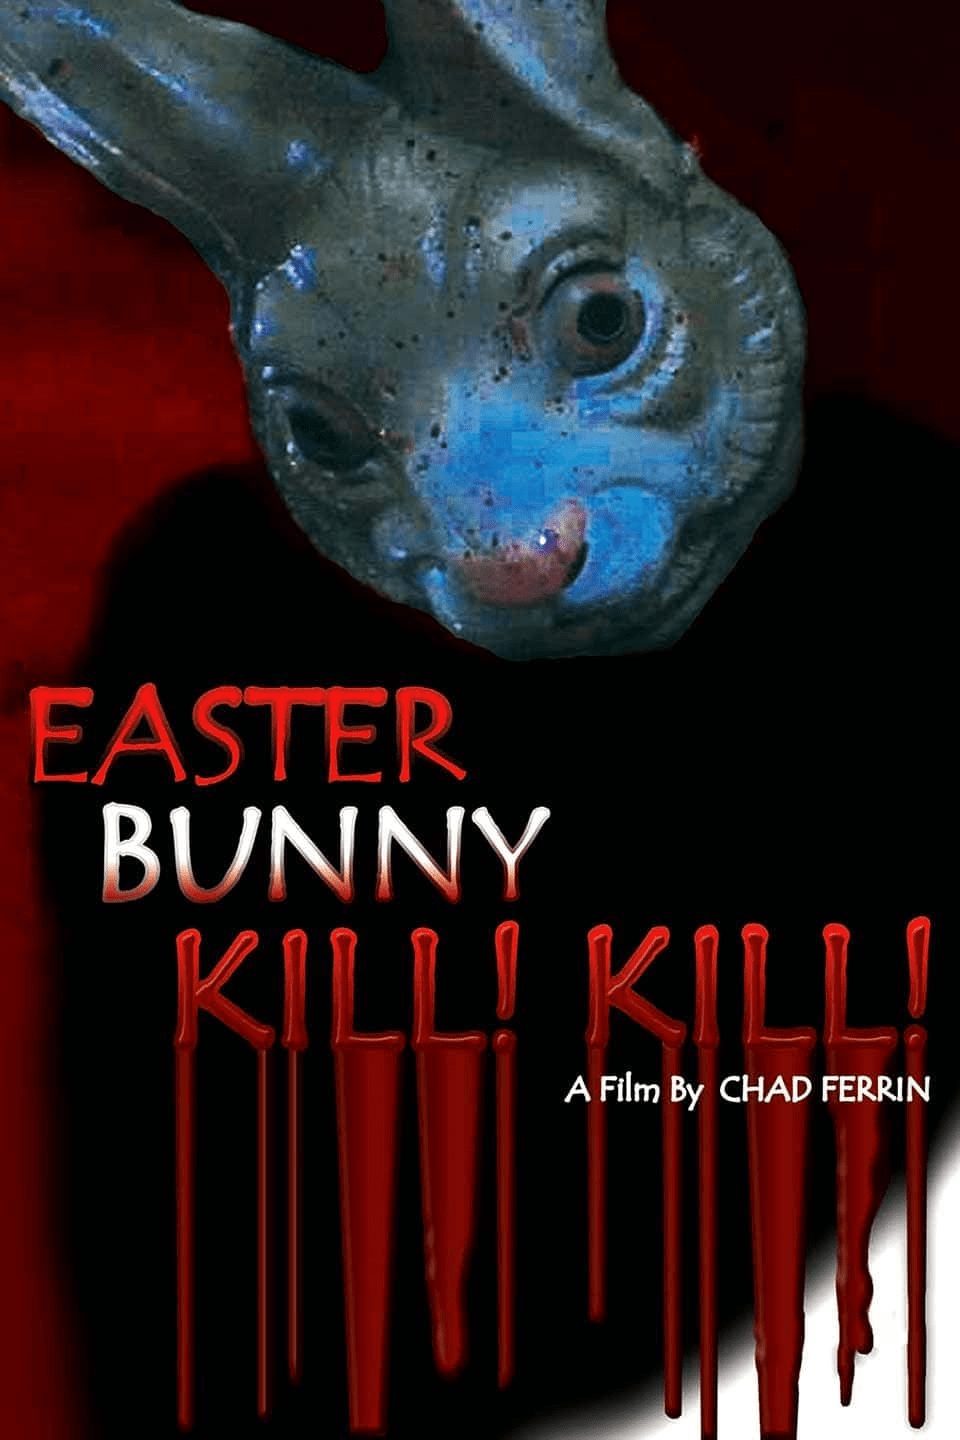 Easter Bunny Kill! Kill! Streaming Free